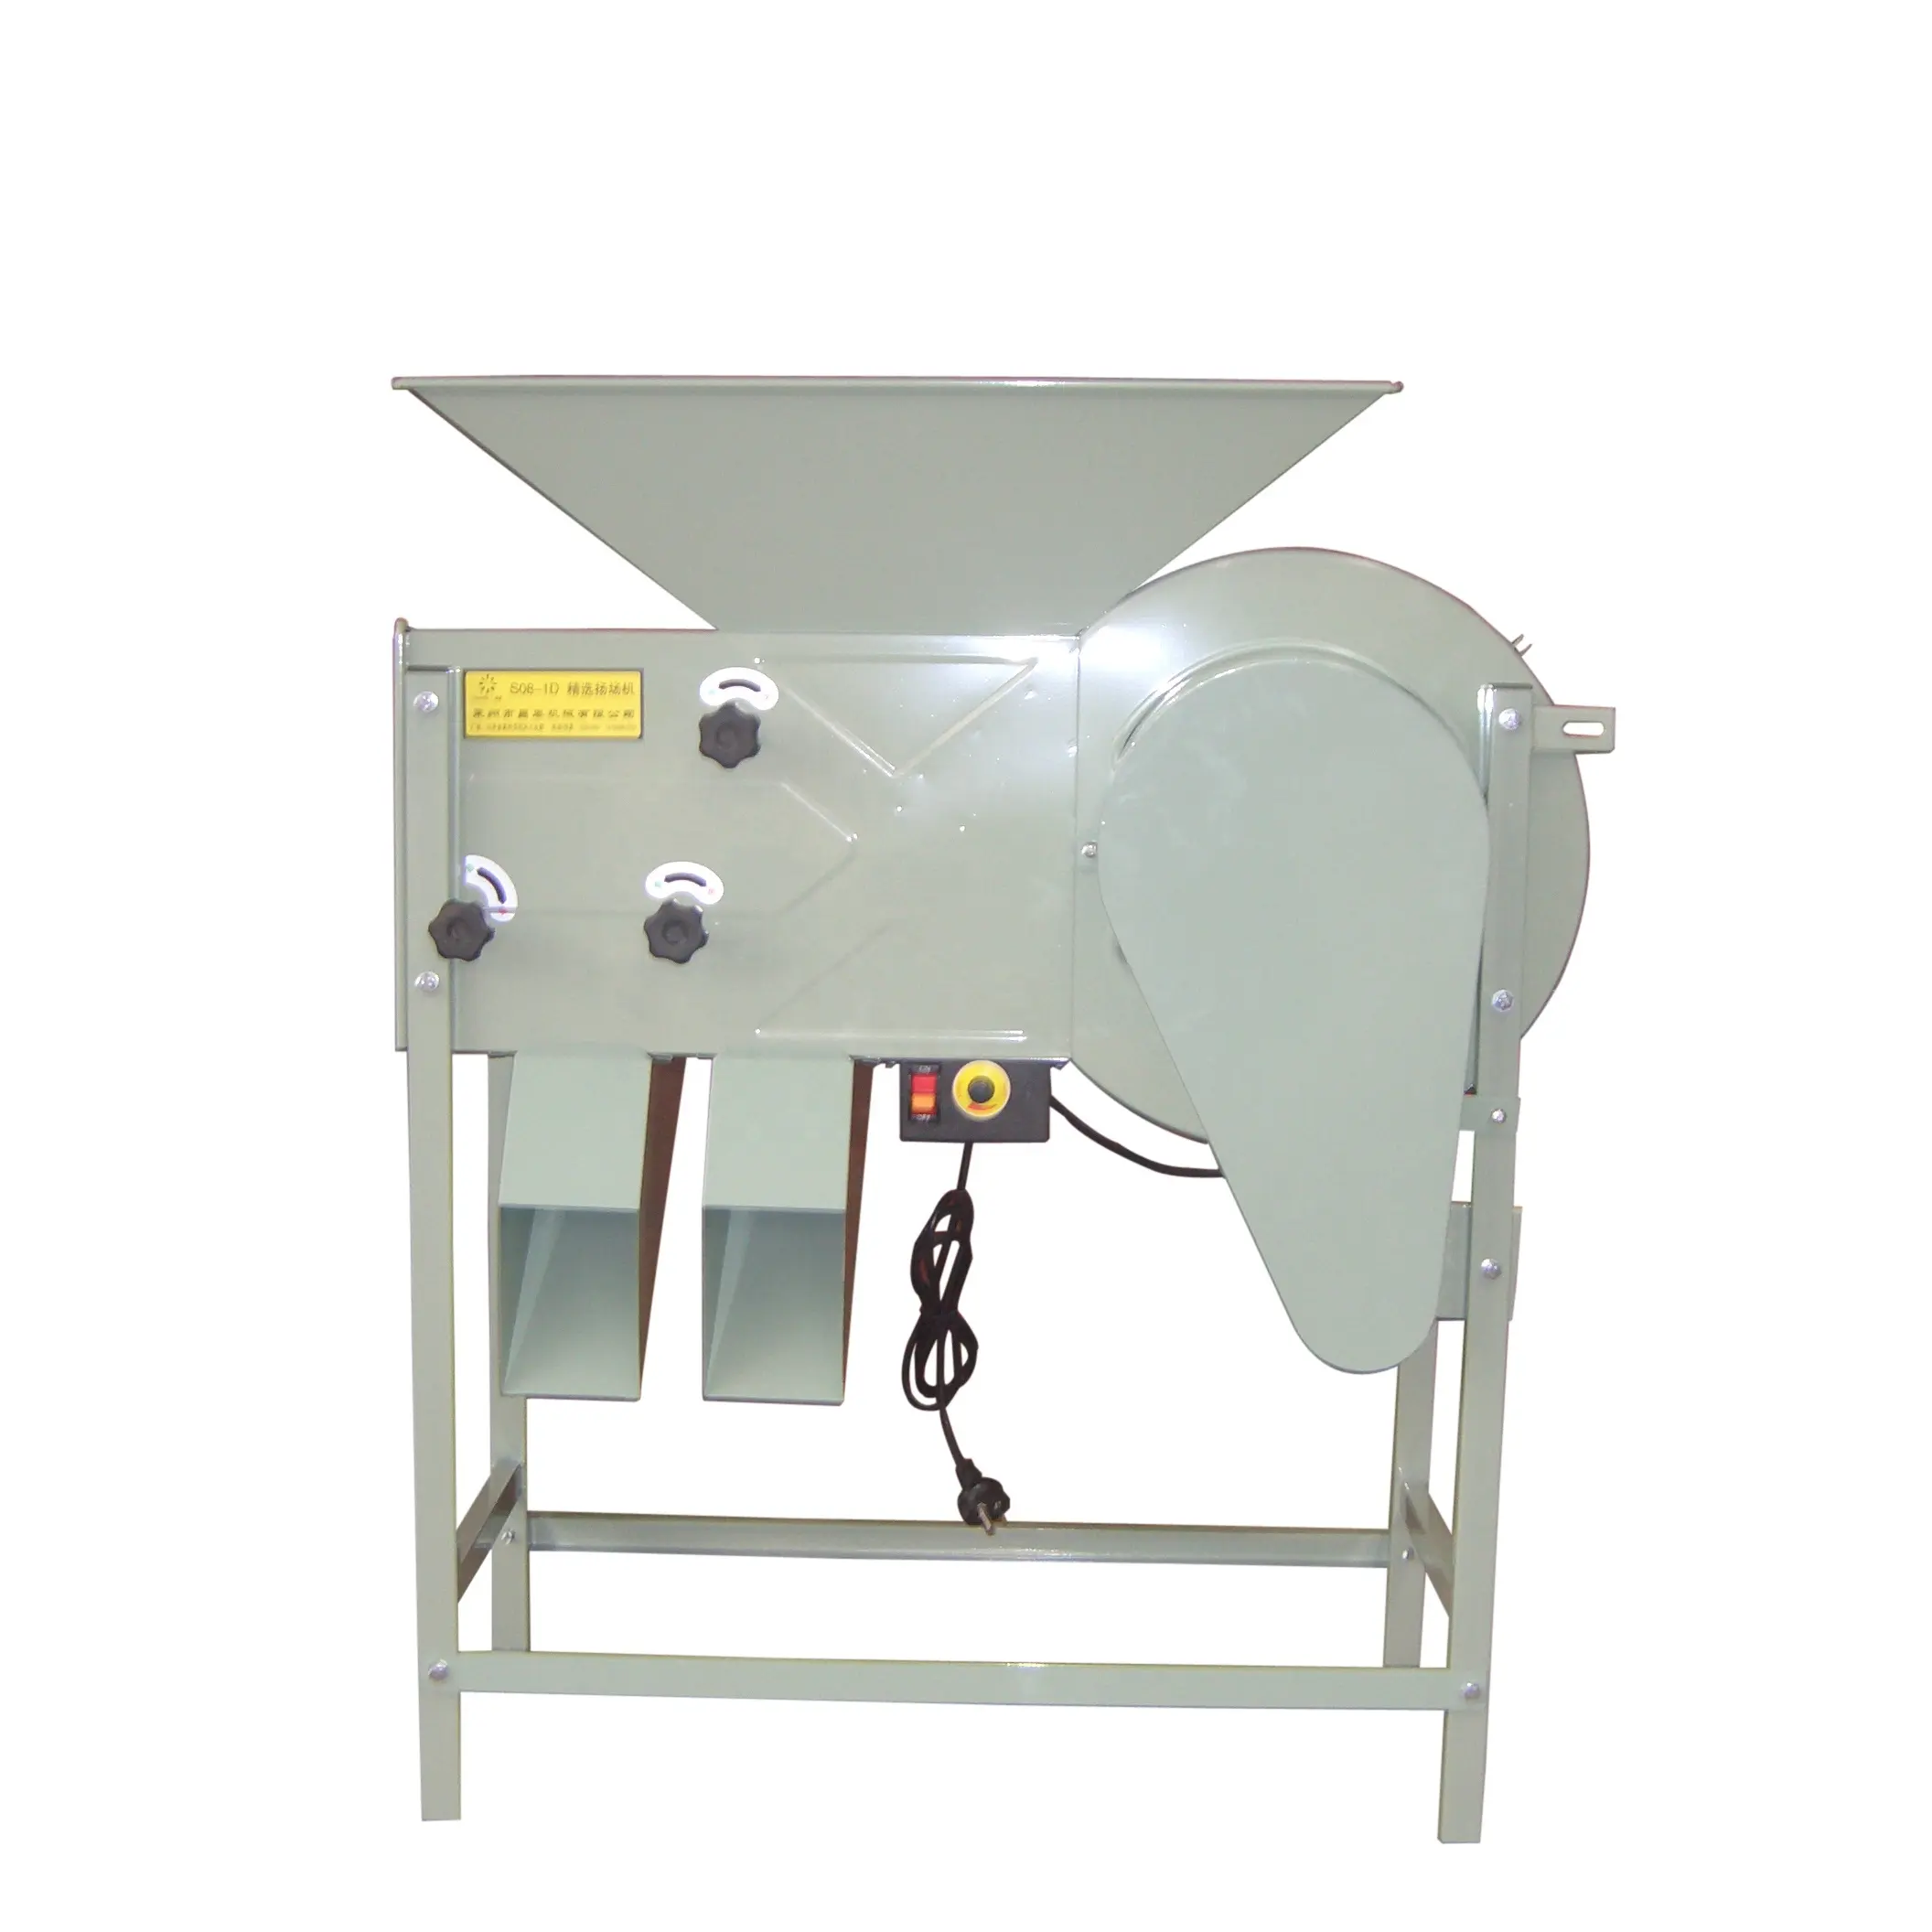 Vendita calda di grano attrezzature per la pulizia tarare di smistamento e la macchina di separazione